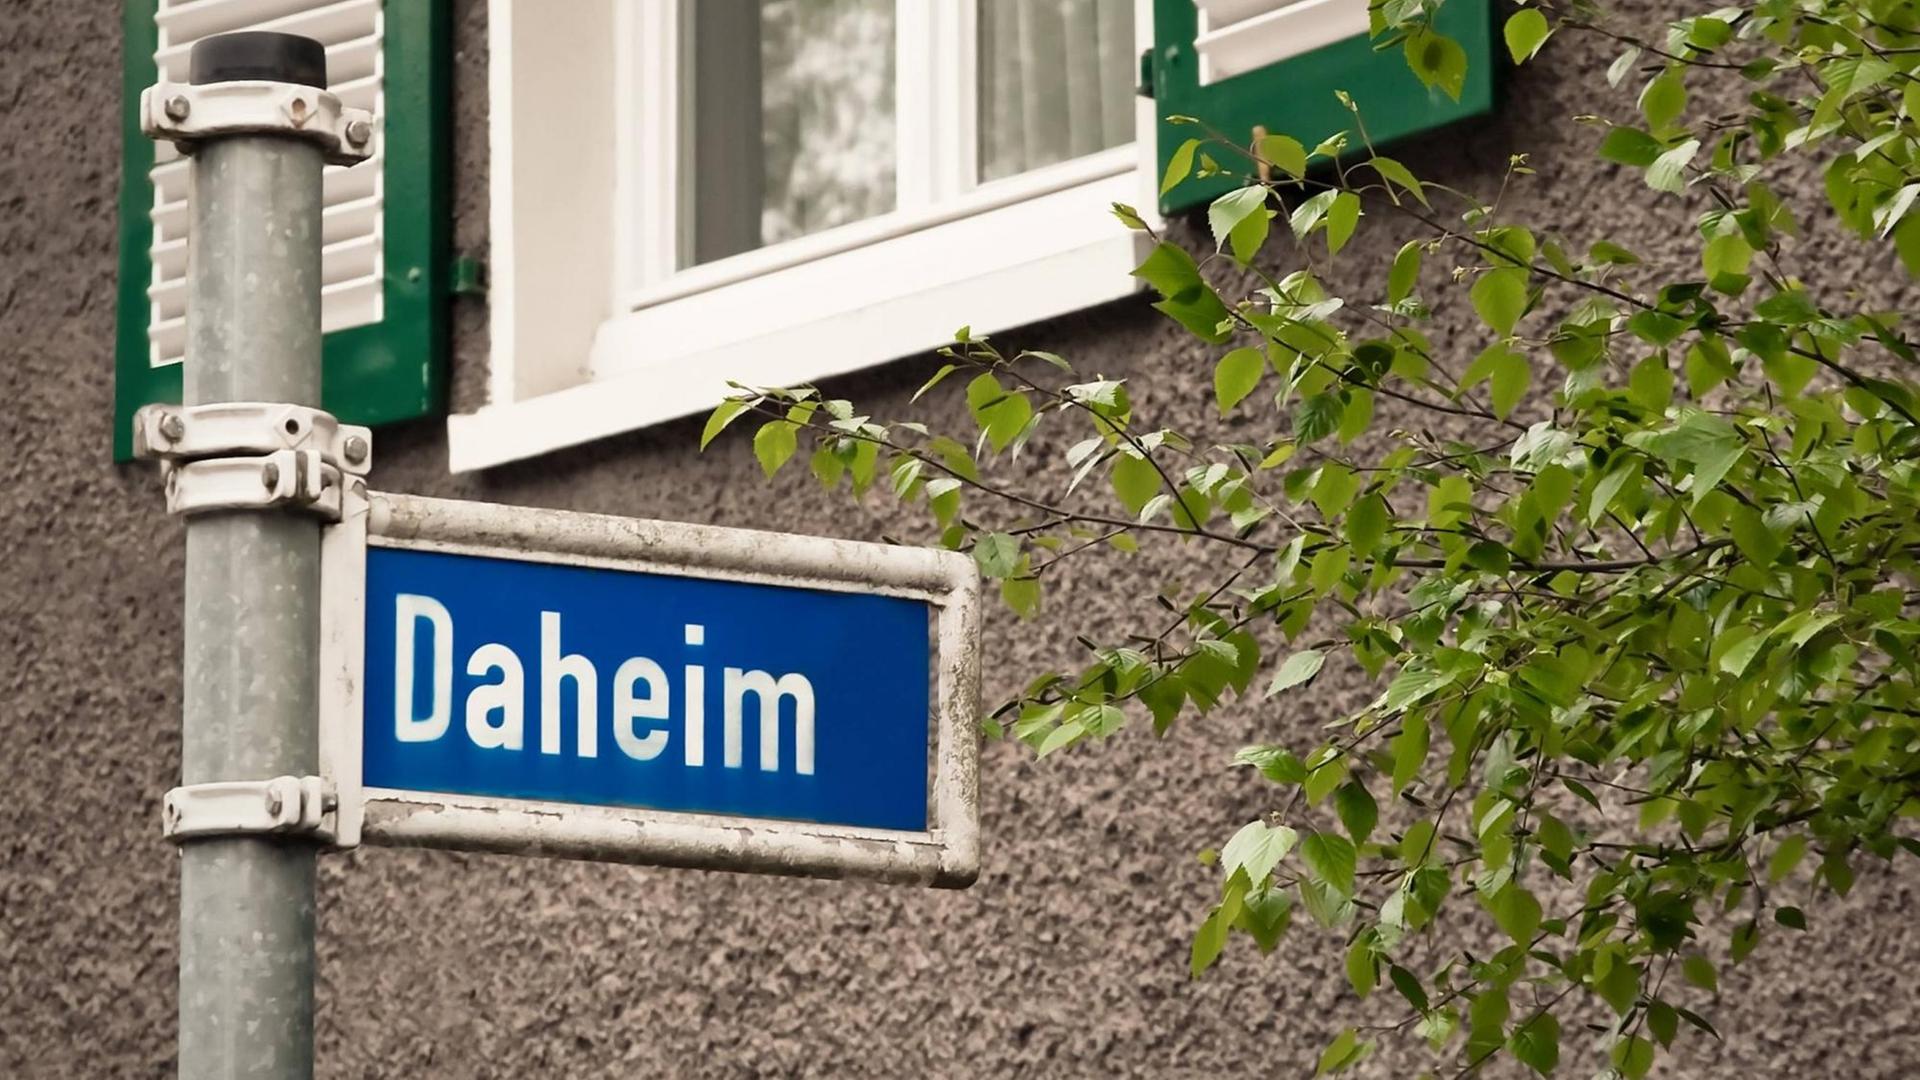 Ein blaues Straßenschild auf dem in weißen Buchstaben "Daheim" steht.